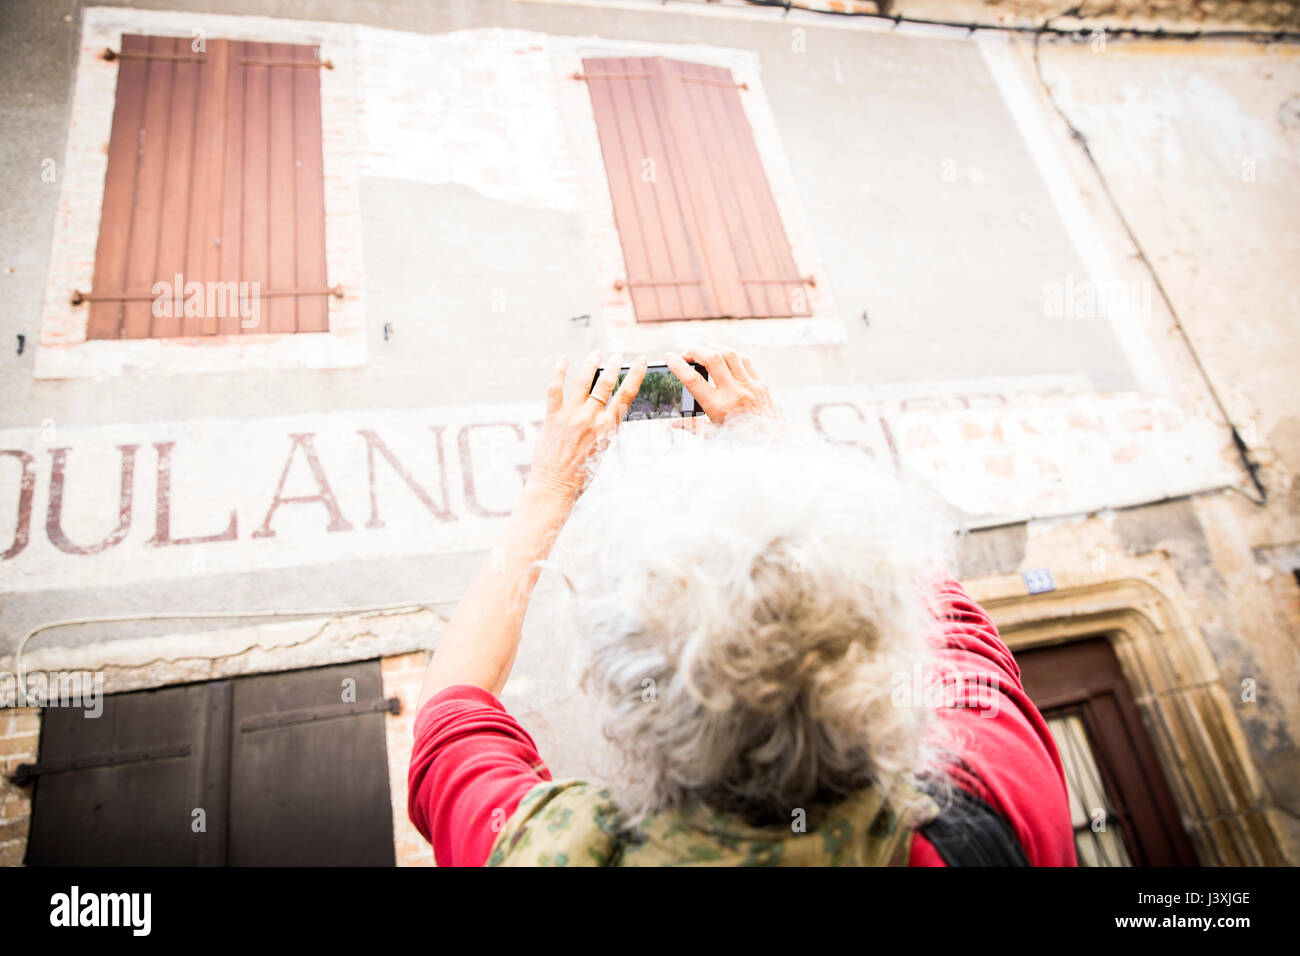 Donna prendendo fotografia di insegne su esterno dell'edificio, Bruniquel, Francia Foto Stock